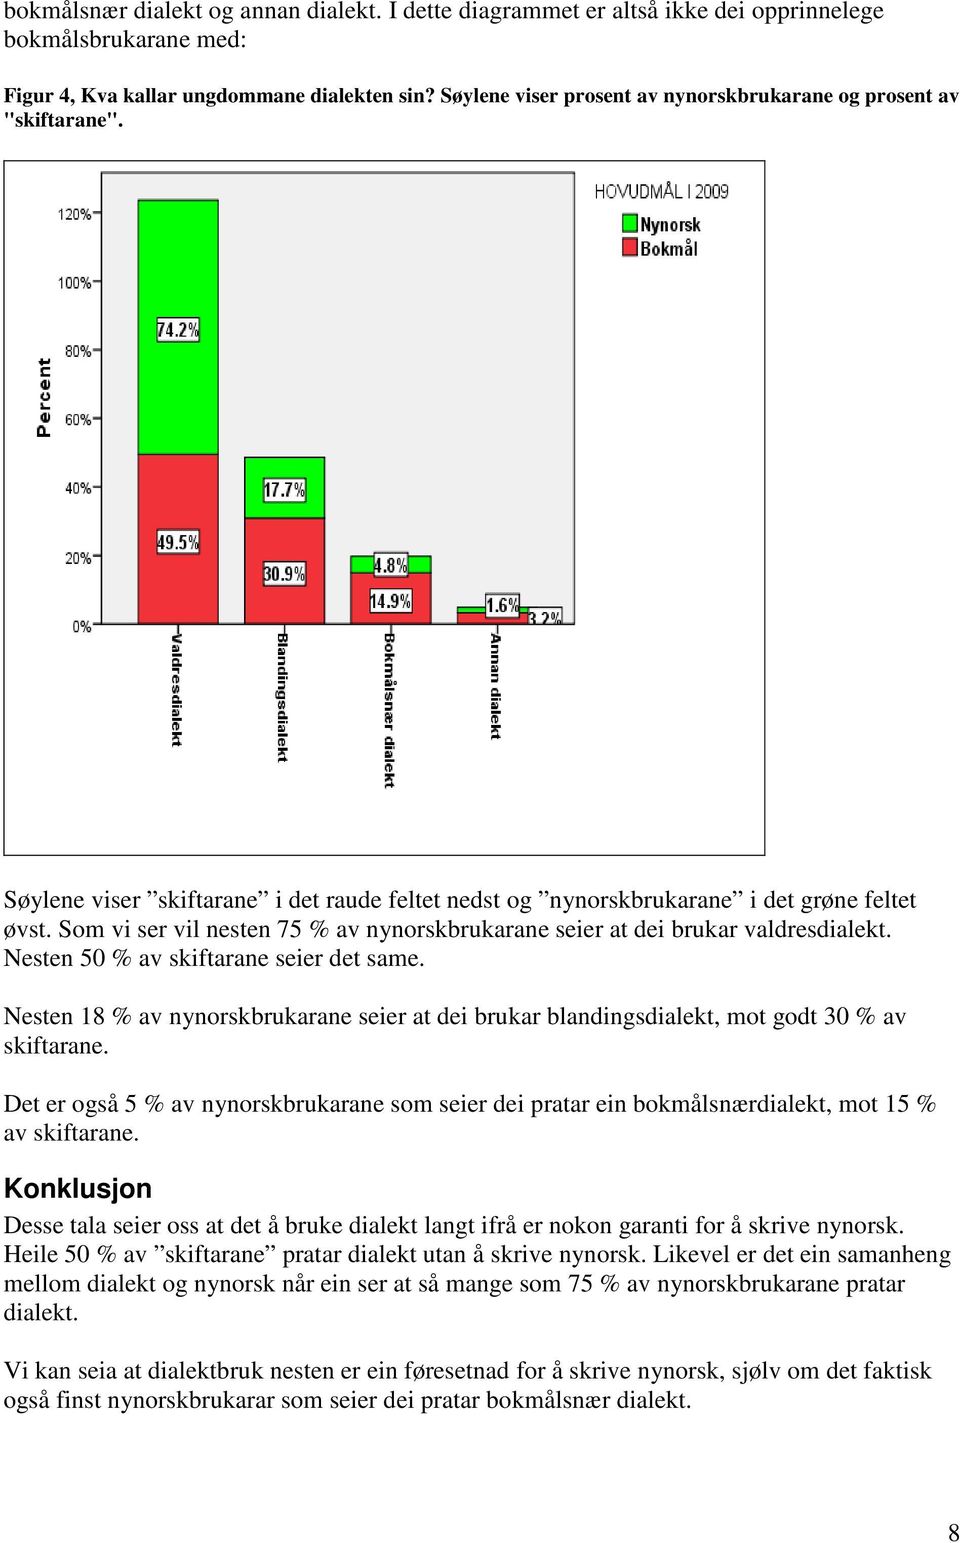 Som vi ser vil nesten 75 % av nynorskbrukarane seier at dei brukar valdresdialekt. Nesten 50 % av skiftarane seier det same.